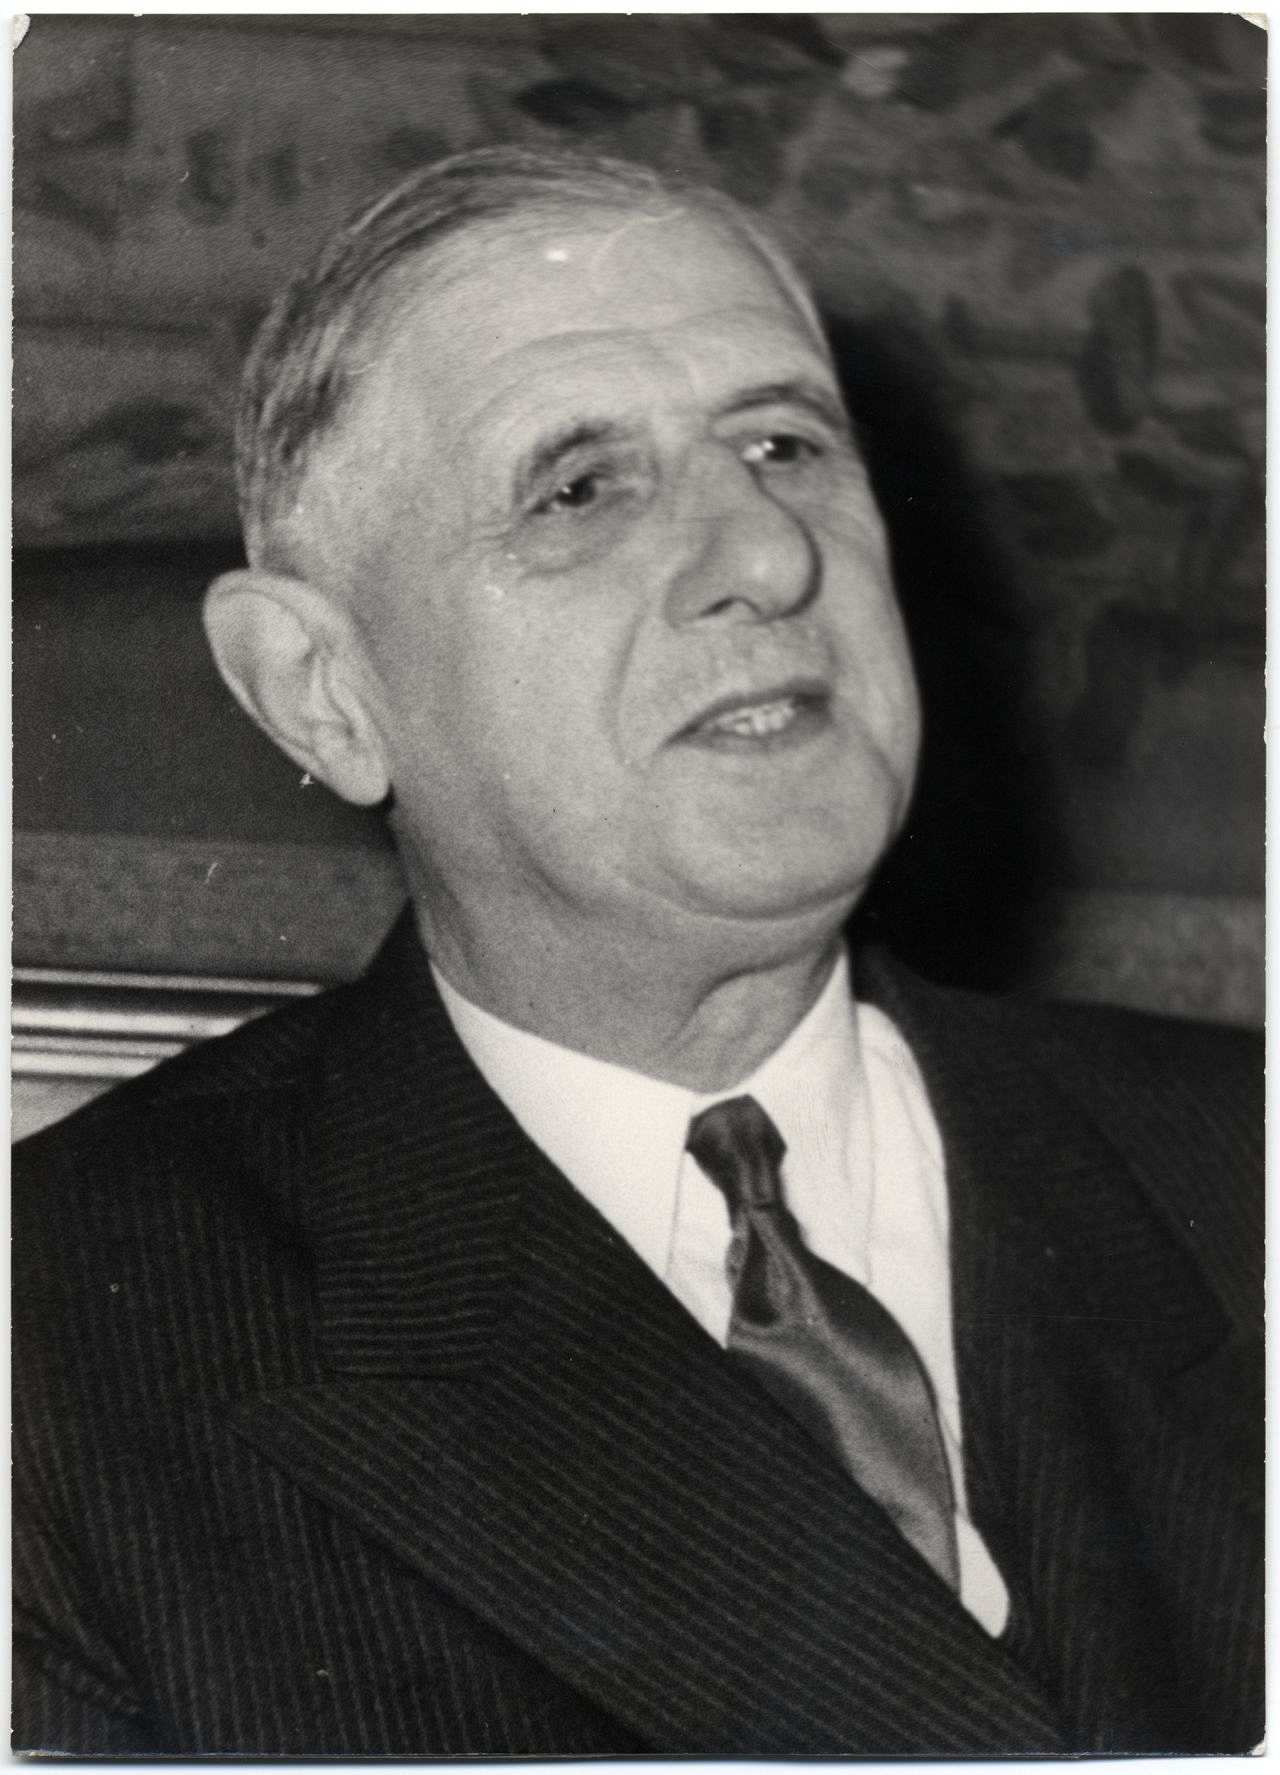 Porträt von General Charles de Gaulle, 1958.